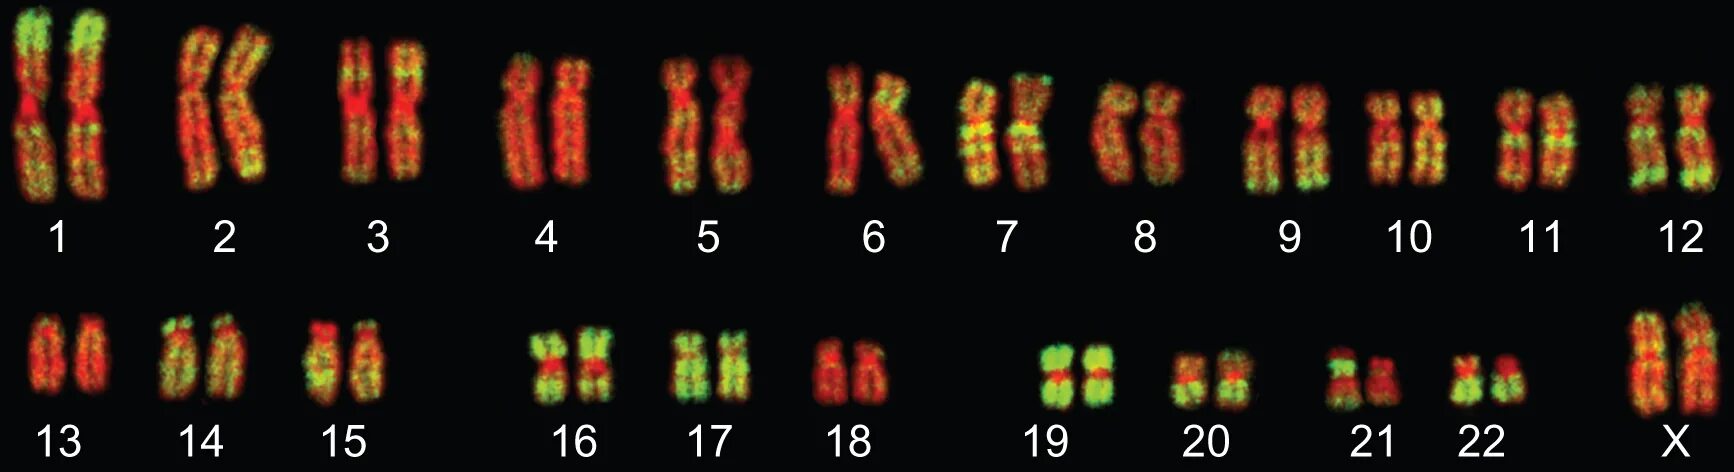 Изменение окраски хромосом. Нормальный кариотип человека 46 хромосом. Цитогенетический метод окрашивание хромосом. Хромосомы кариотип.